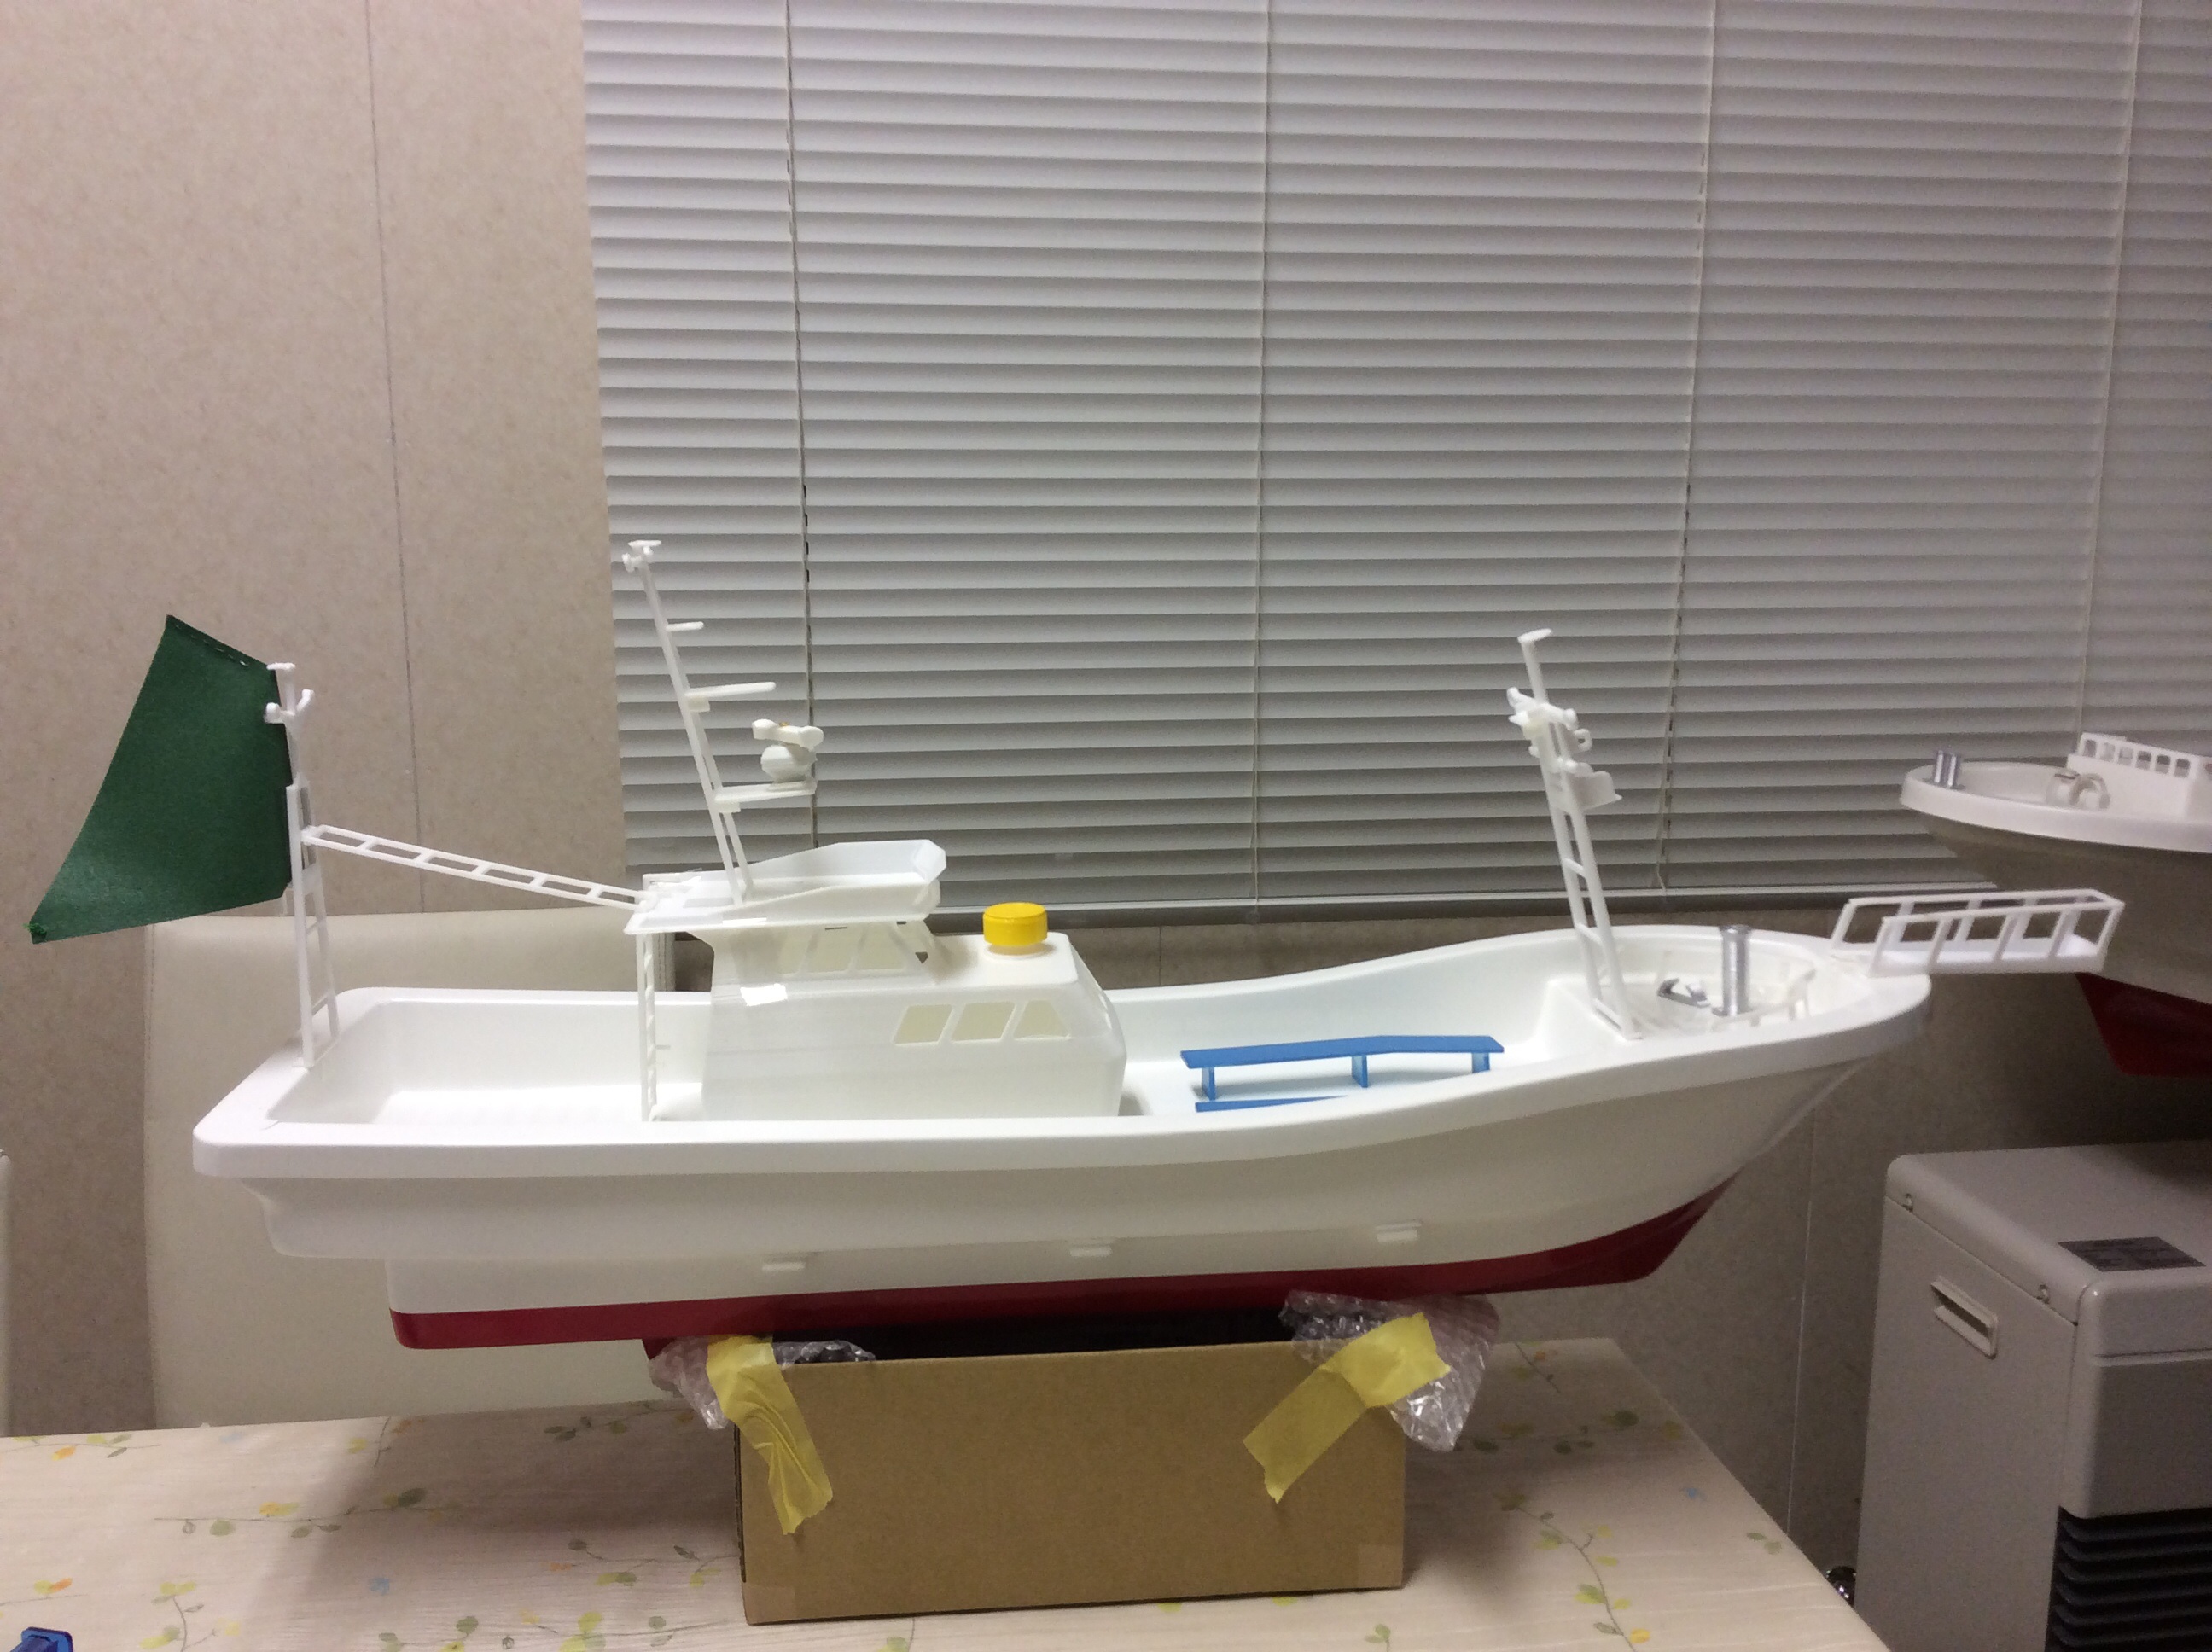 ＦＲＰ漁船 模型工房 | 日本の漁船を作っています | ページ 2